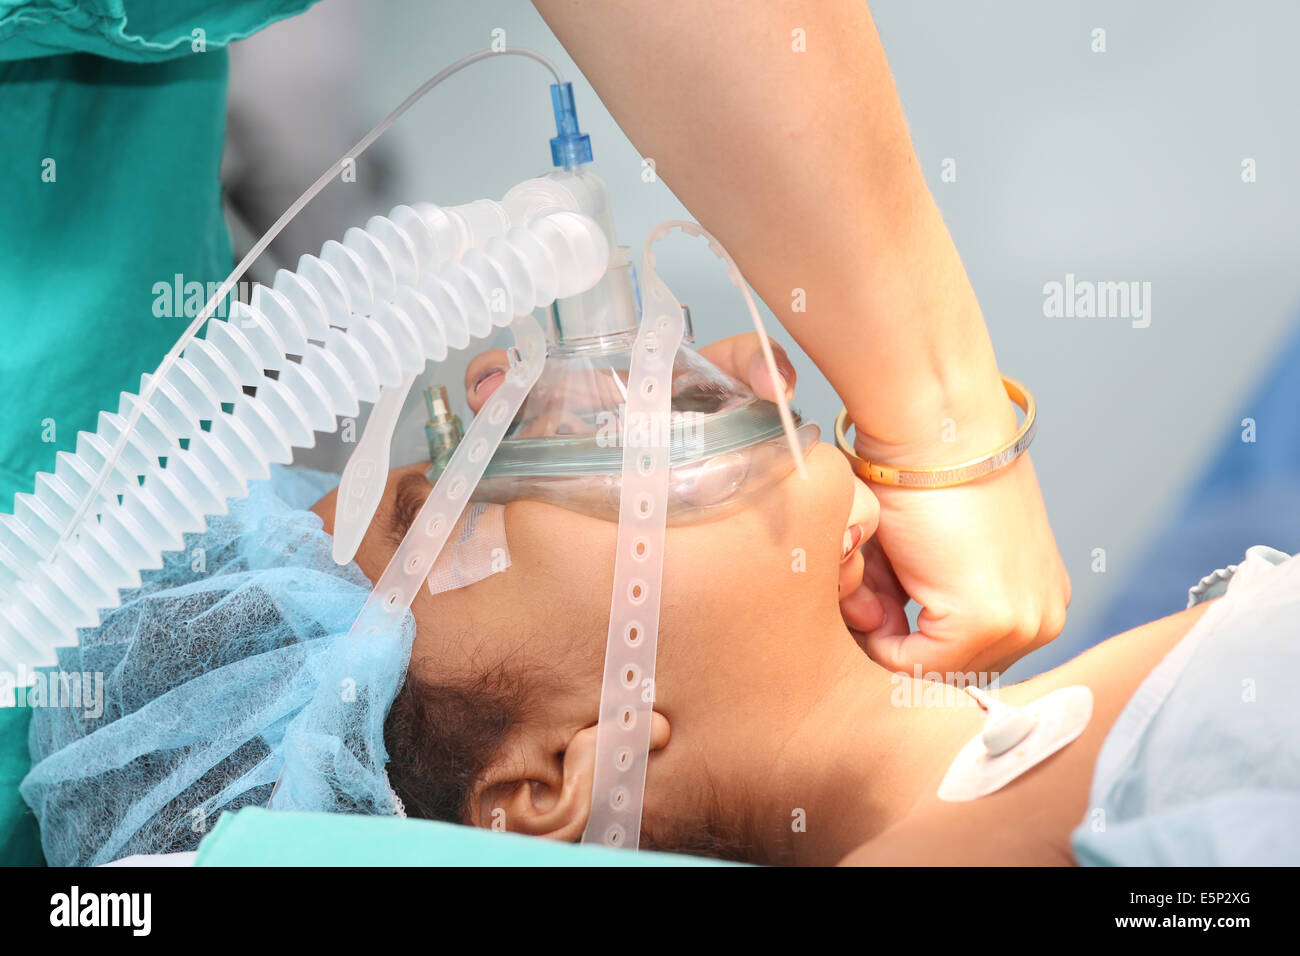 Maschera per anestesia immagini e fotografie stock ad alta risoluzione -  Alamy